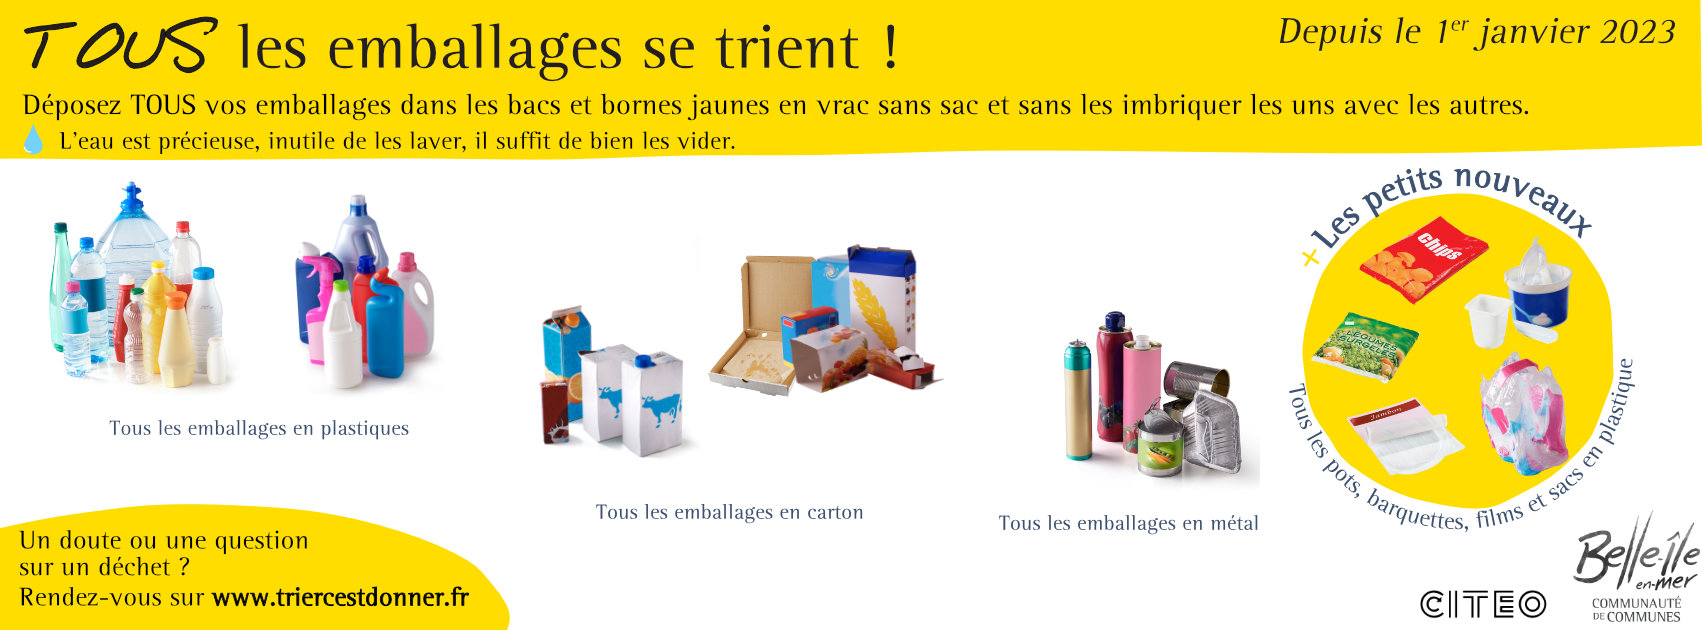 Emballages plastiques : 35 communes du Béarn pilotes pour le tri